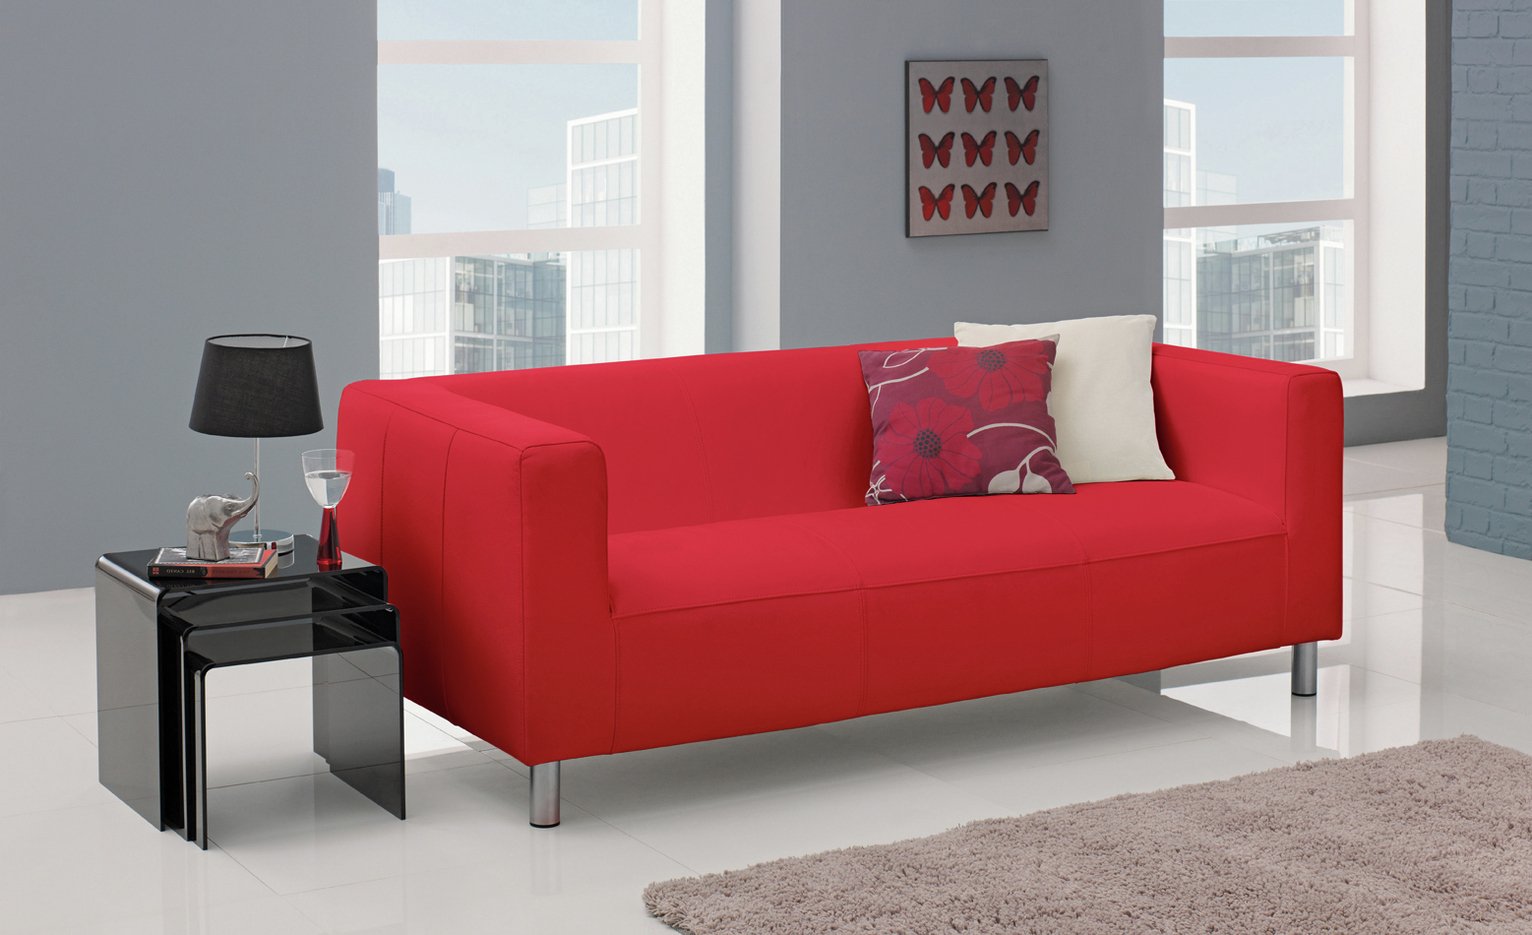 Argos Home Moda 3 Seater Fabric Sofa Review